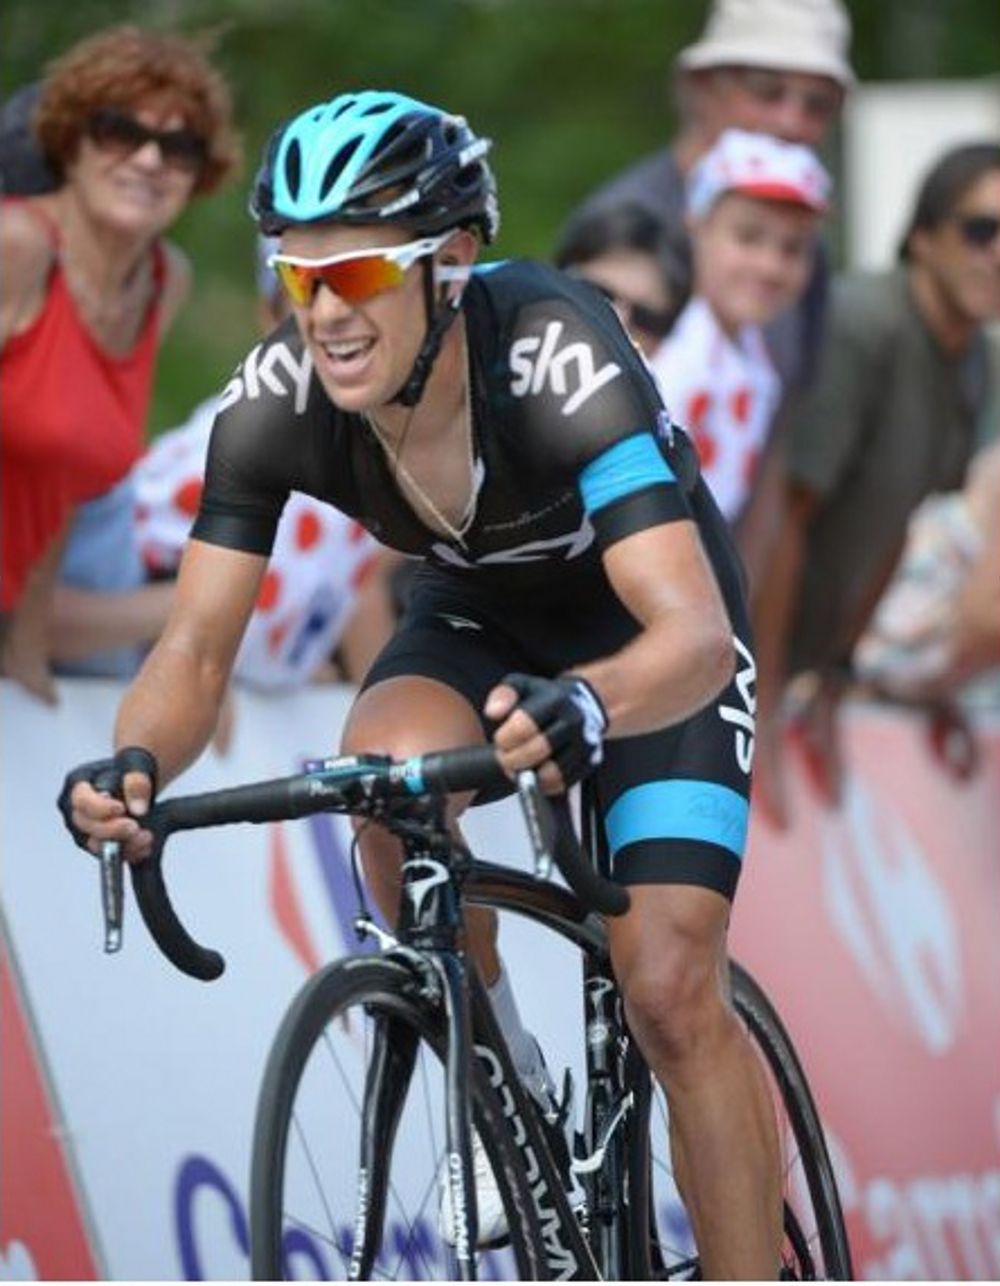 Tour de France 2013: Richie Porte